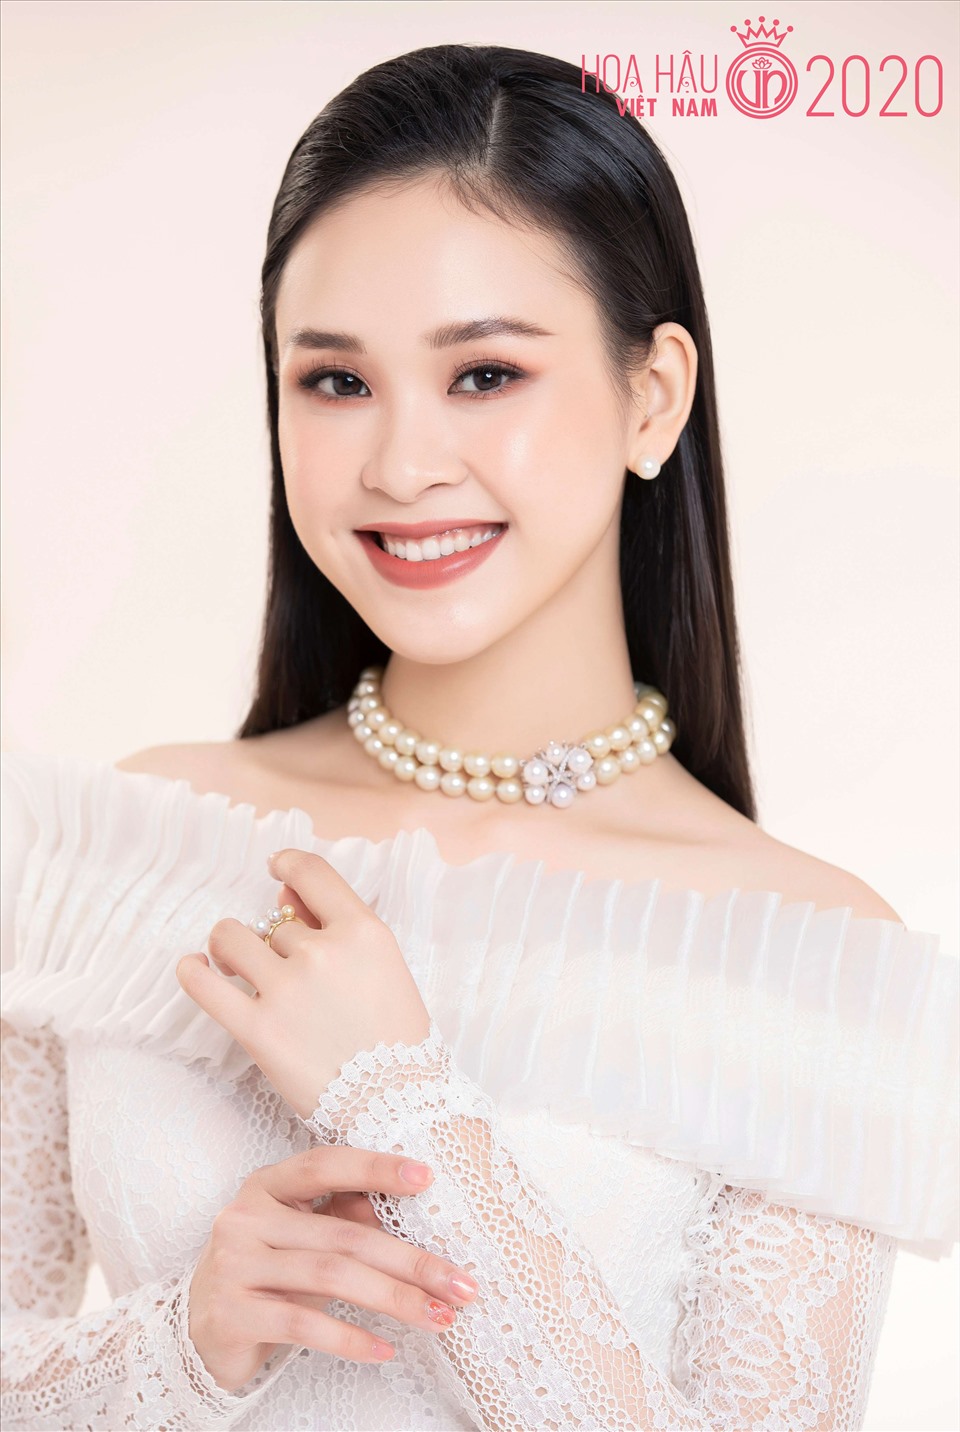 Nguyễn Thảo Vy cũng là thí sinh được đặc cách vào bán kết Hoa hậu Việt Nam 2020 với thành tích Á khôi Sinh viên Việt Nam năm 2018. Ảnh: Lê Thiện Viễn.